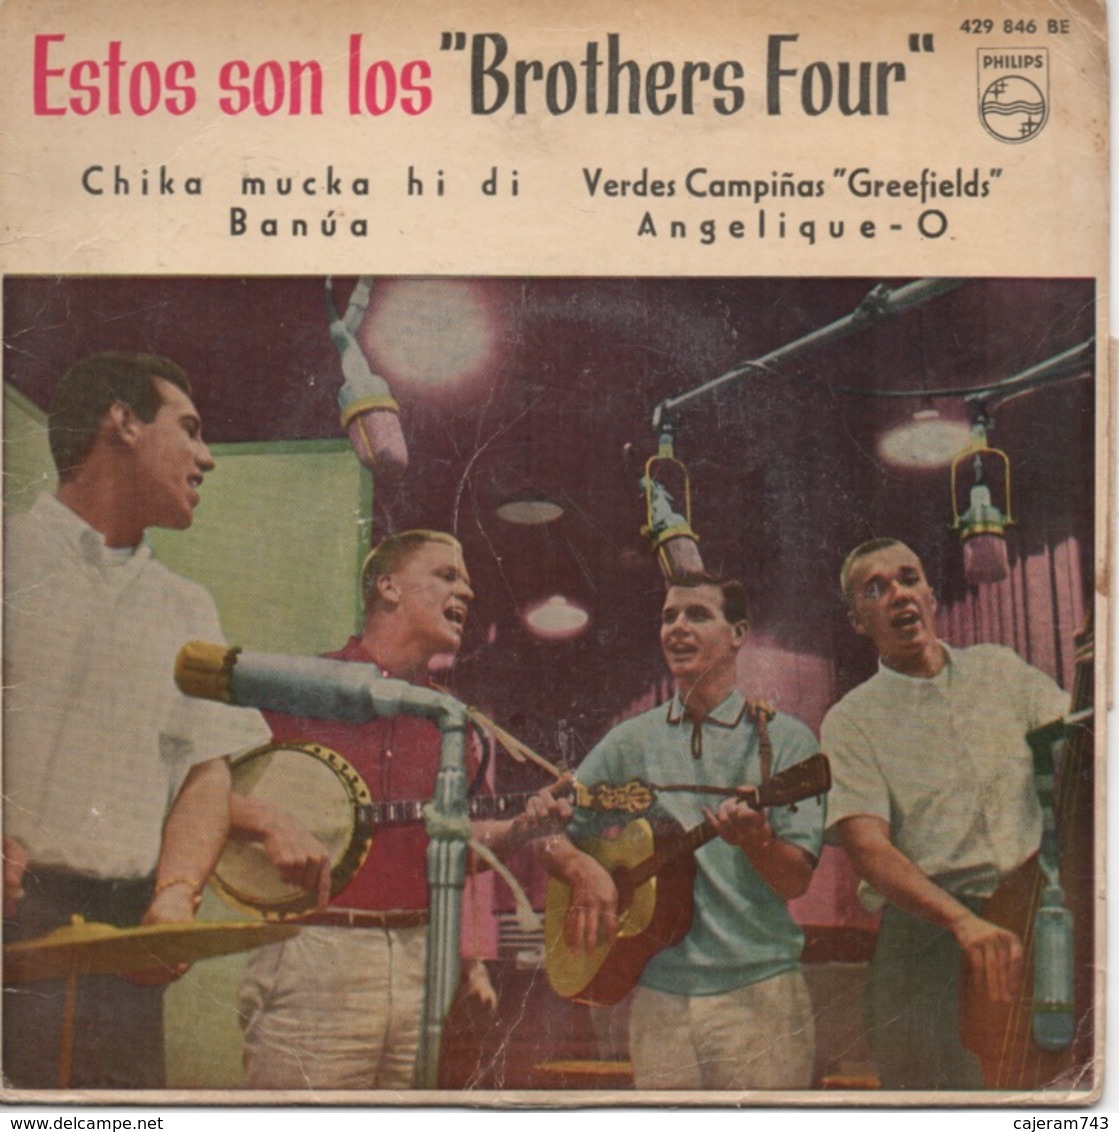 45T. Estos Son Los "Brothers Four" Chika Mucka Hi Di - Banua - Verdes Campinas "Greefield" - Angelique. Pressage ESPAGNE - Sonstige - Spanische Musik